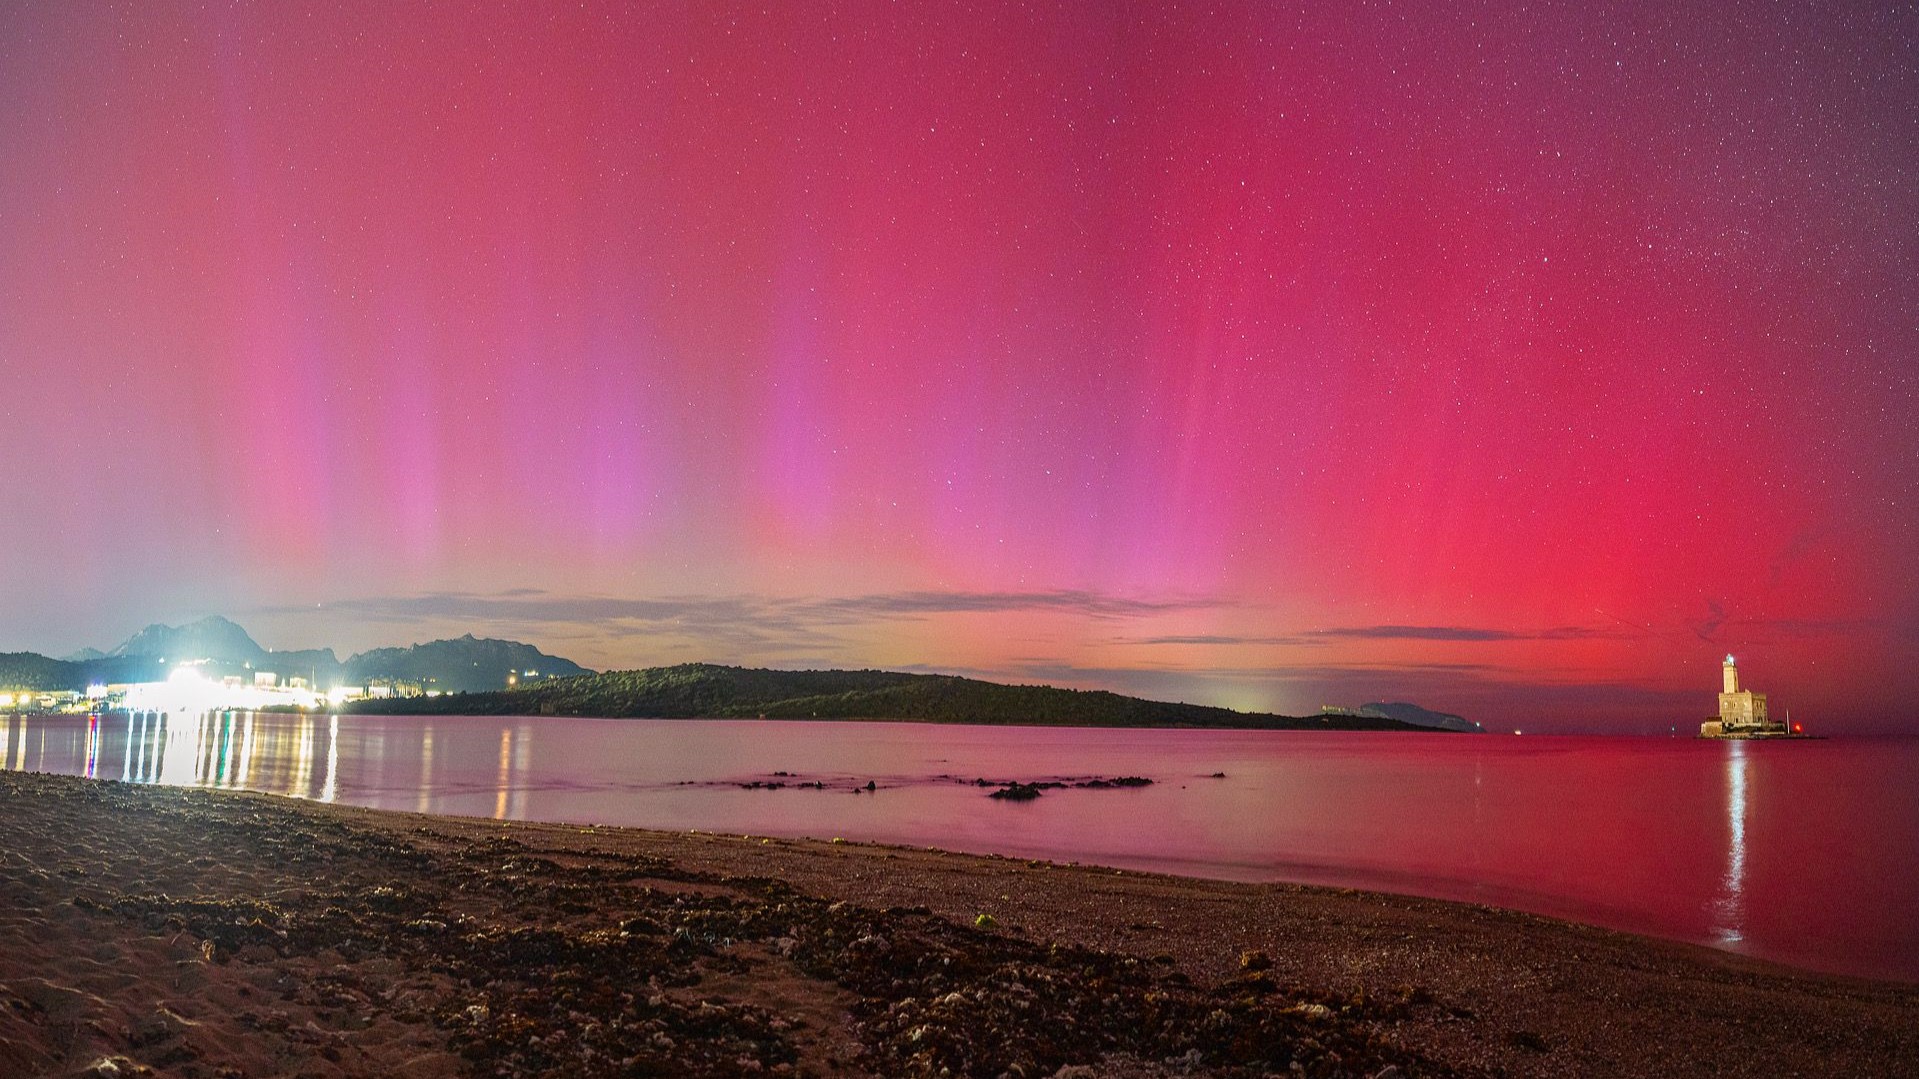 Olbia, spettacolare aurora boreale in uno scatto del fotografo Fabio Serra